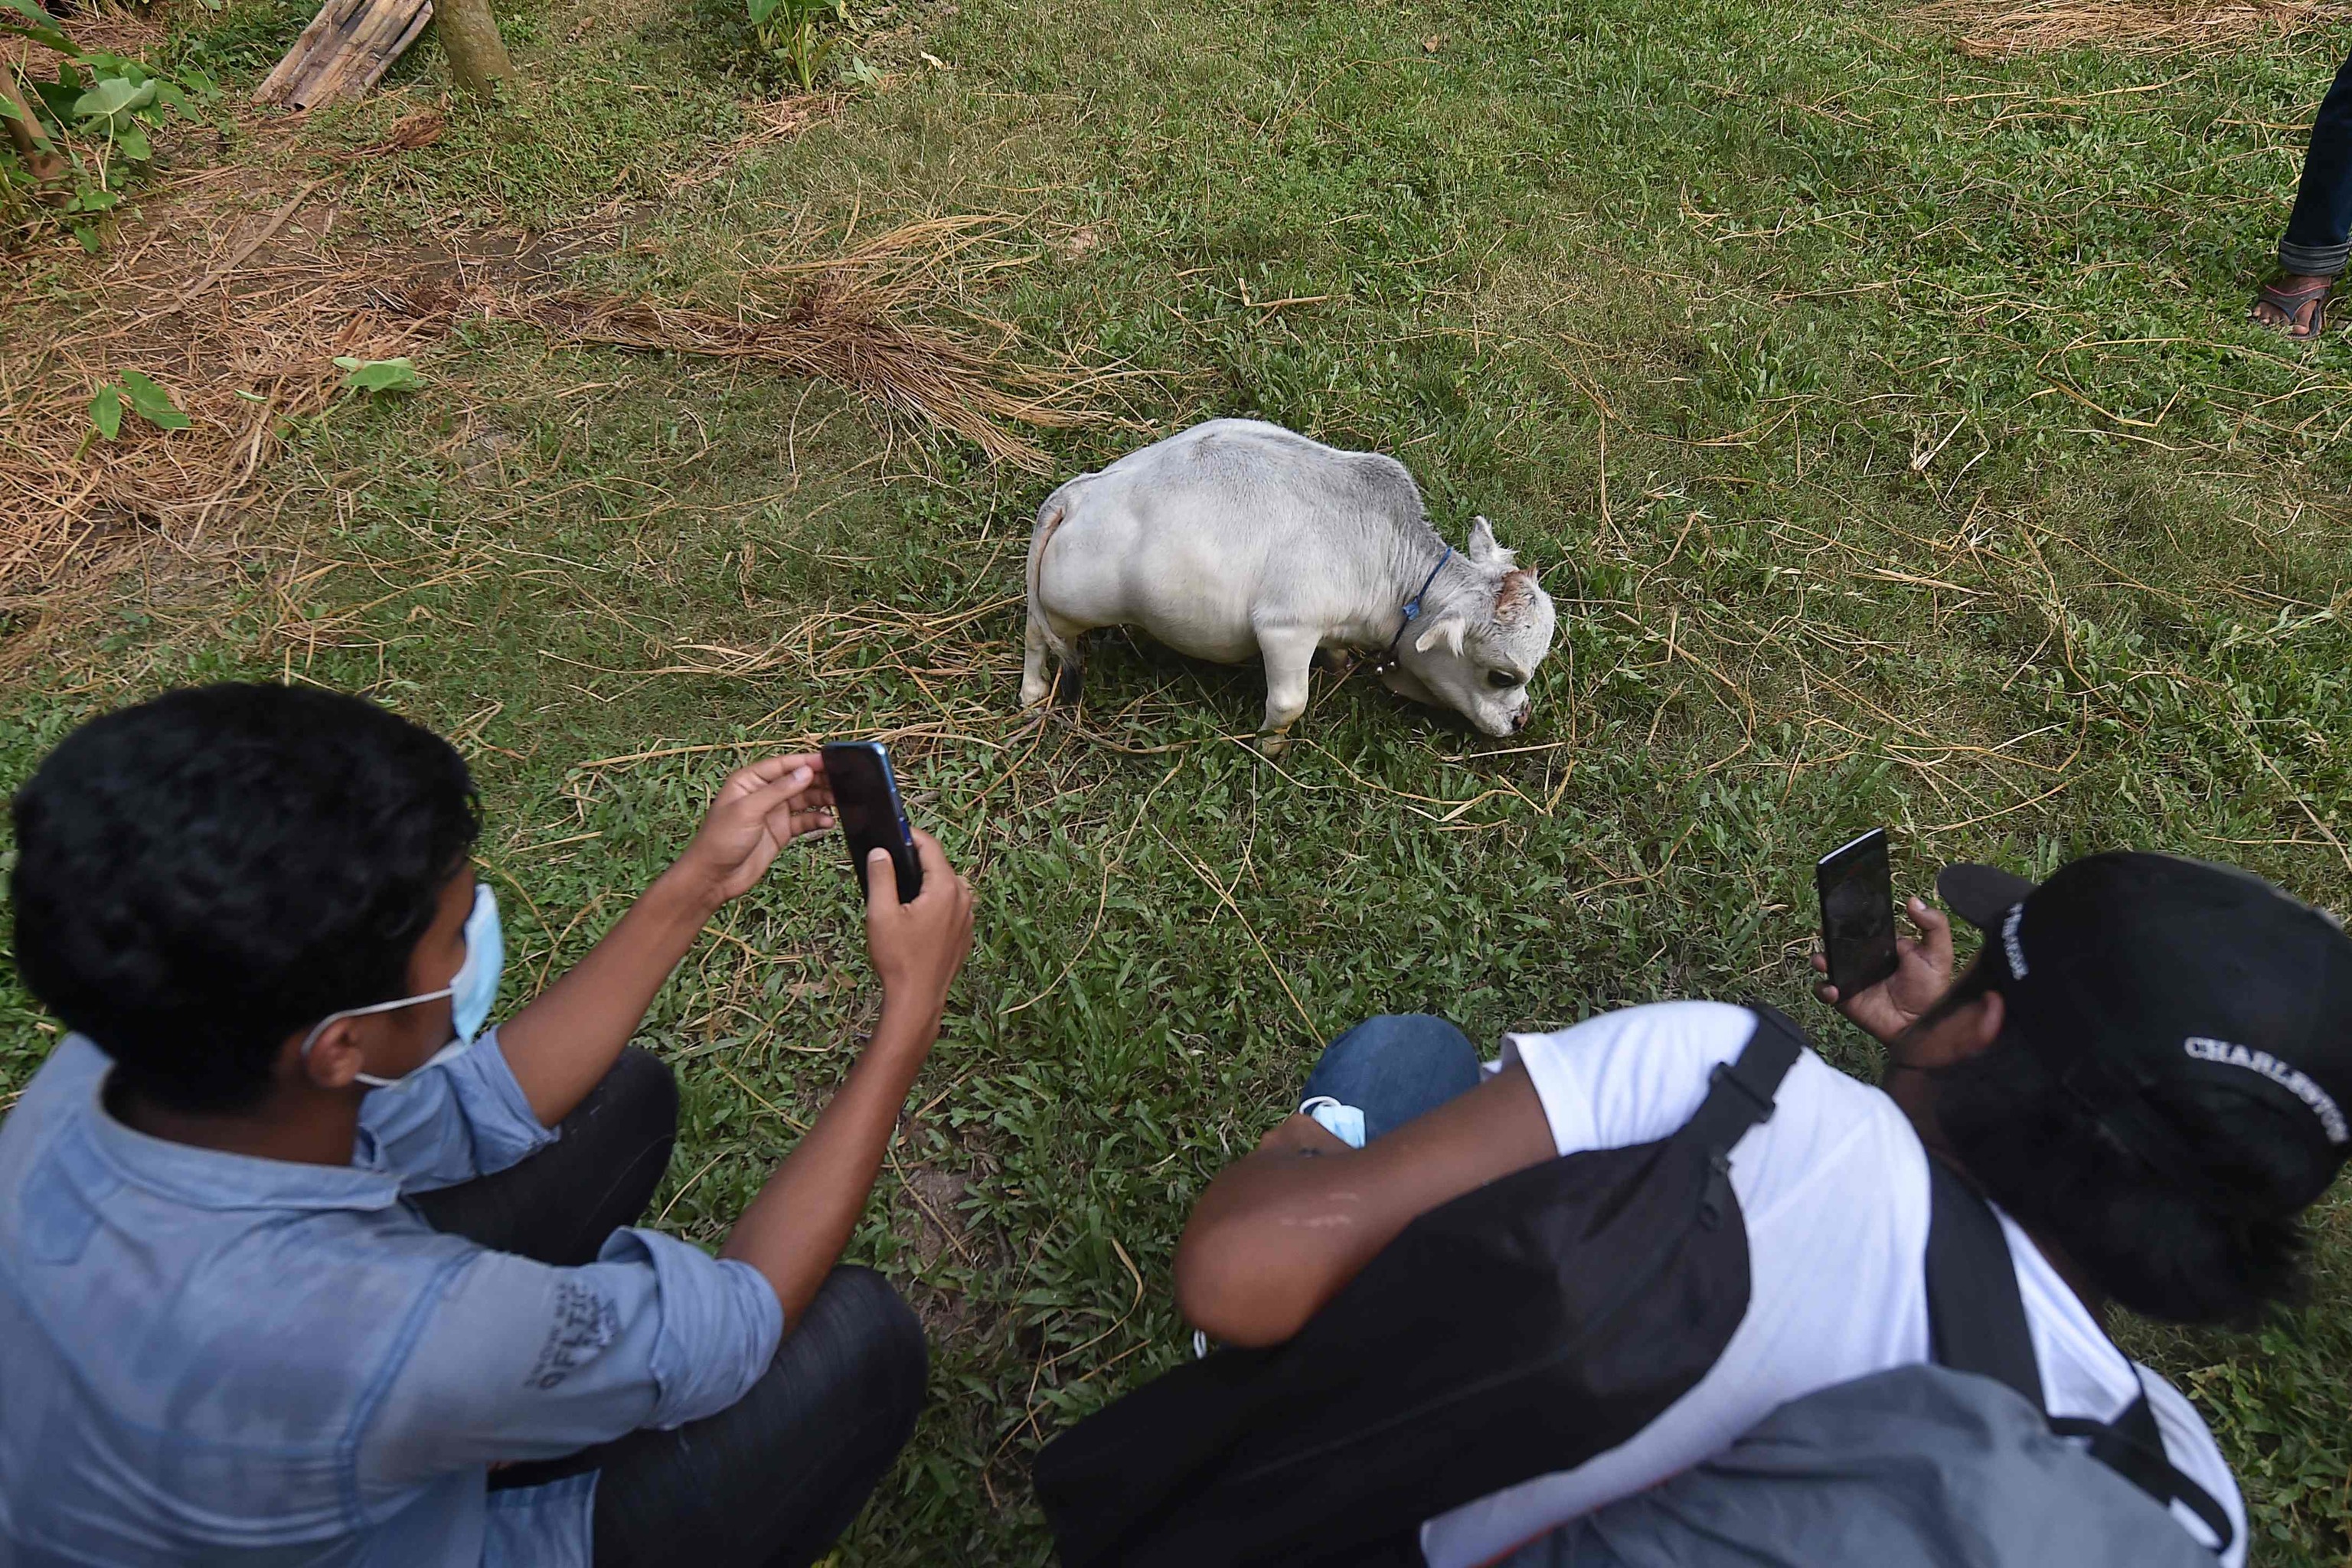 Una vaca enana llamada Rani (abajo), cuyos propietarios solicitaron al Libro Guinness de los Rcords que fuera la vaca ms pequea del mundo, camina junto a una cabra en una granja de ganado en Charigram, a unos 25 km de Savar.